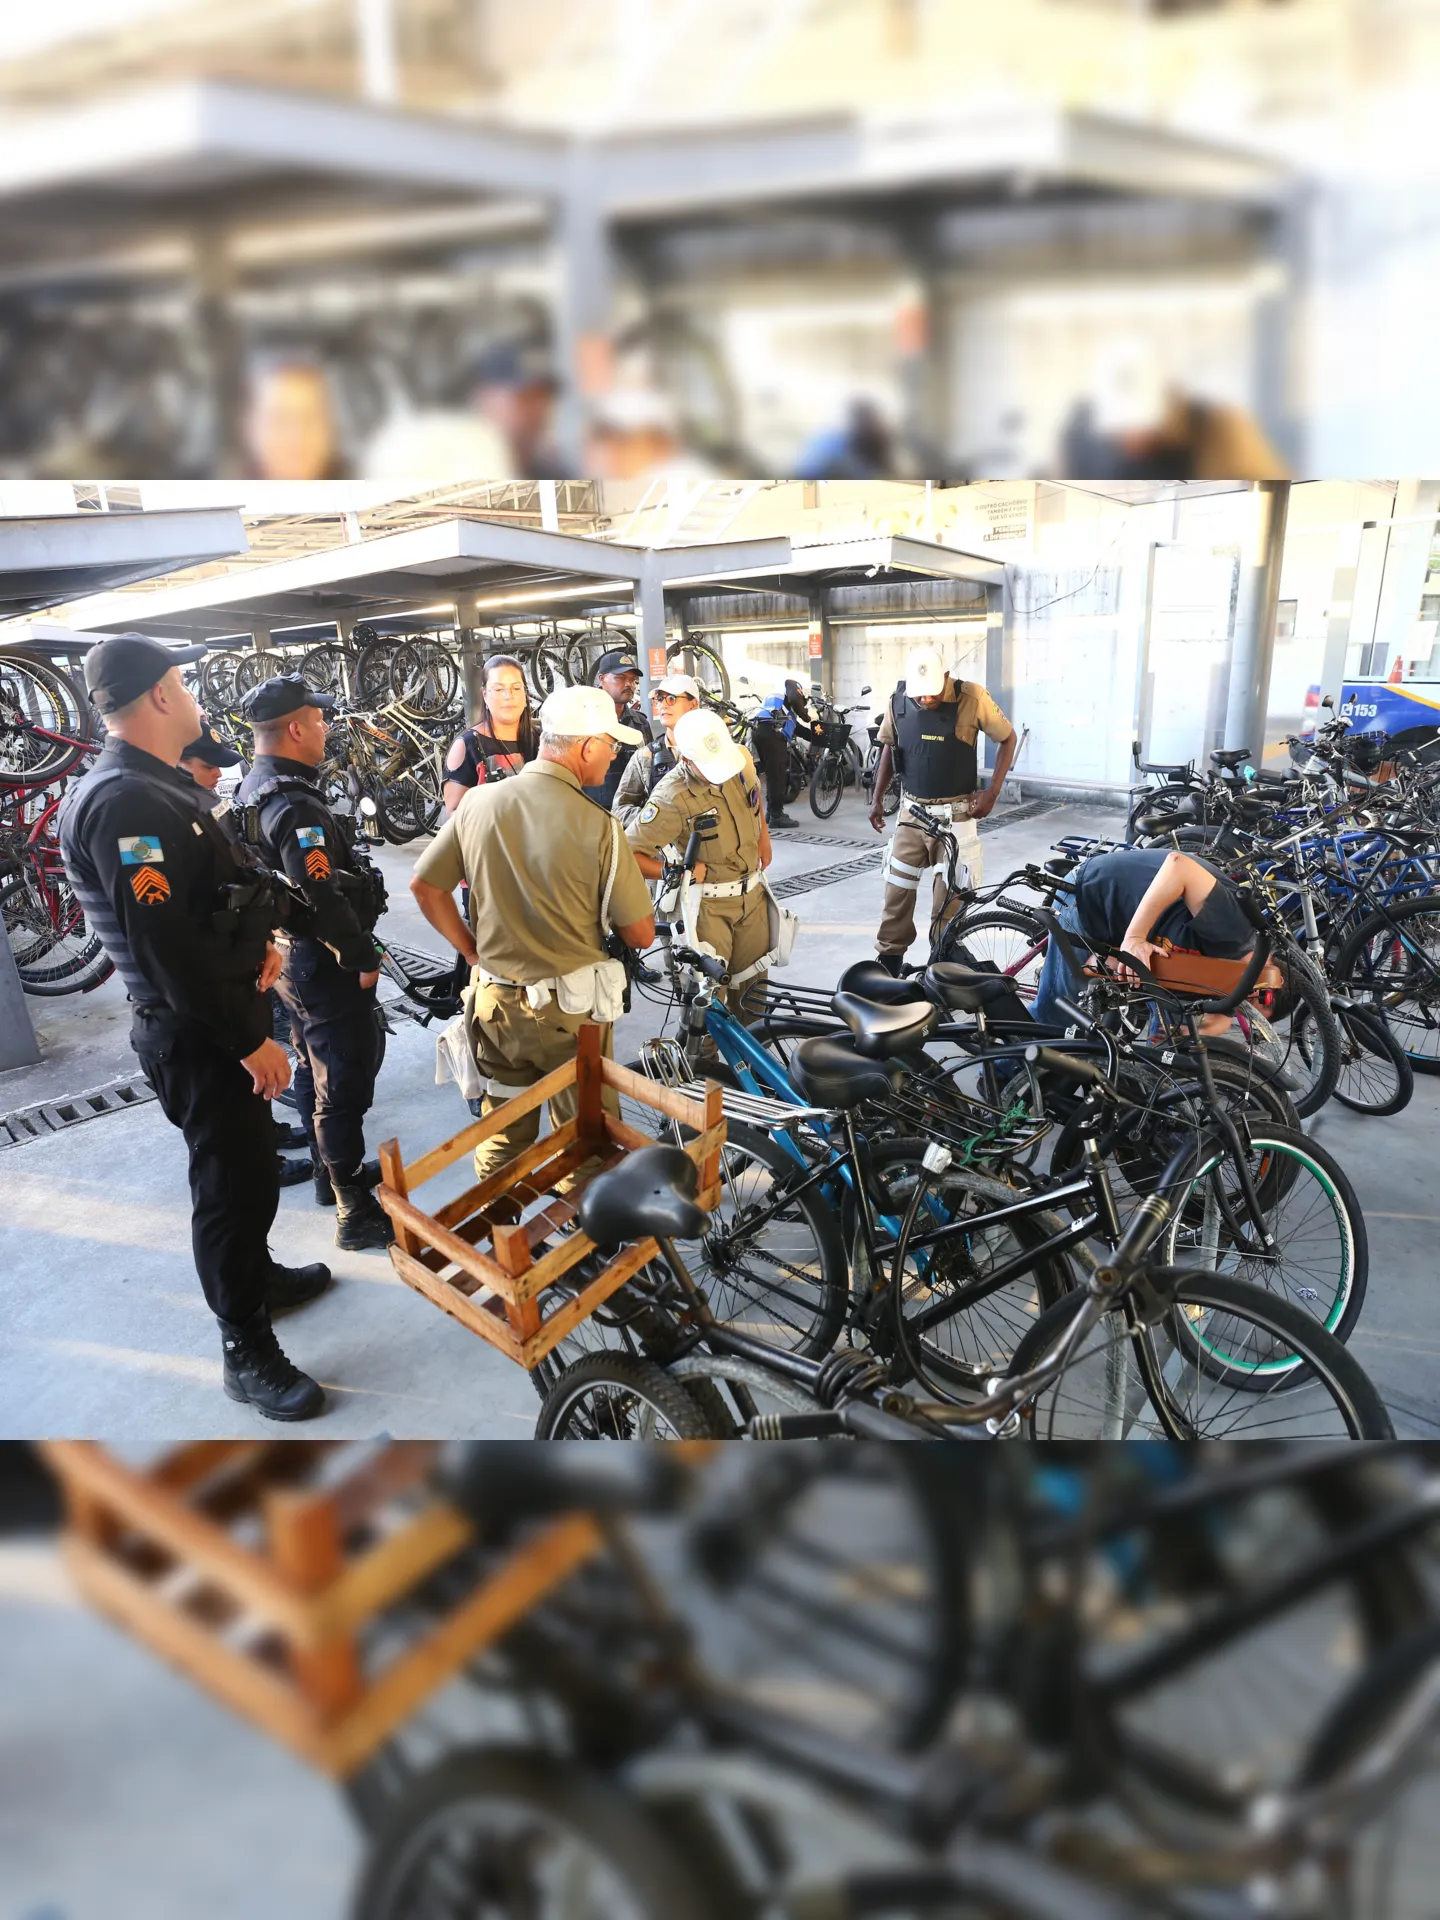 Cadastros no Bicicletário Arariboia agora incluirão números de chassi